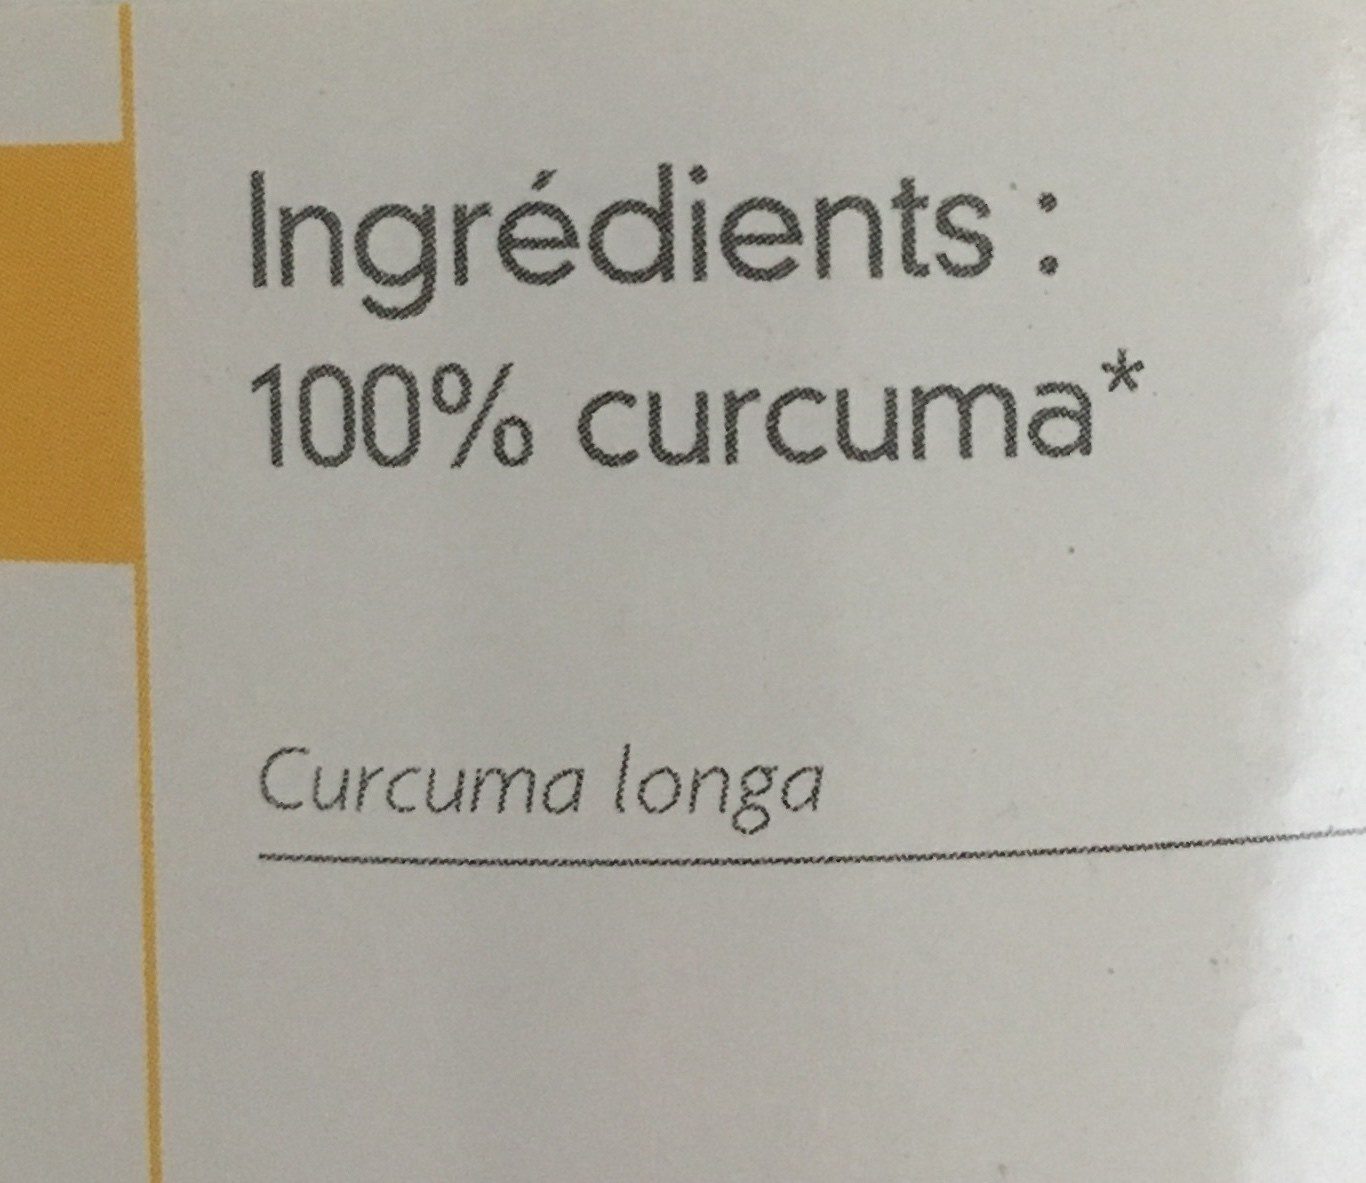 Fructivia Curcuma Bio - Ingredients - fr